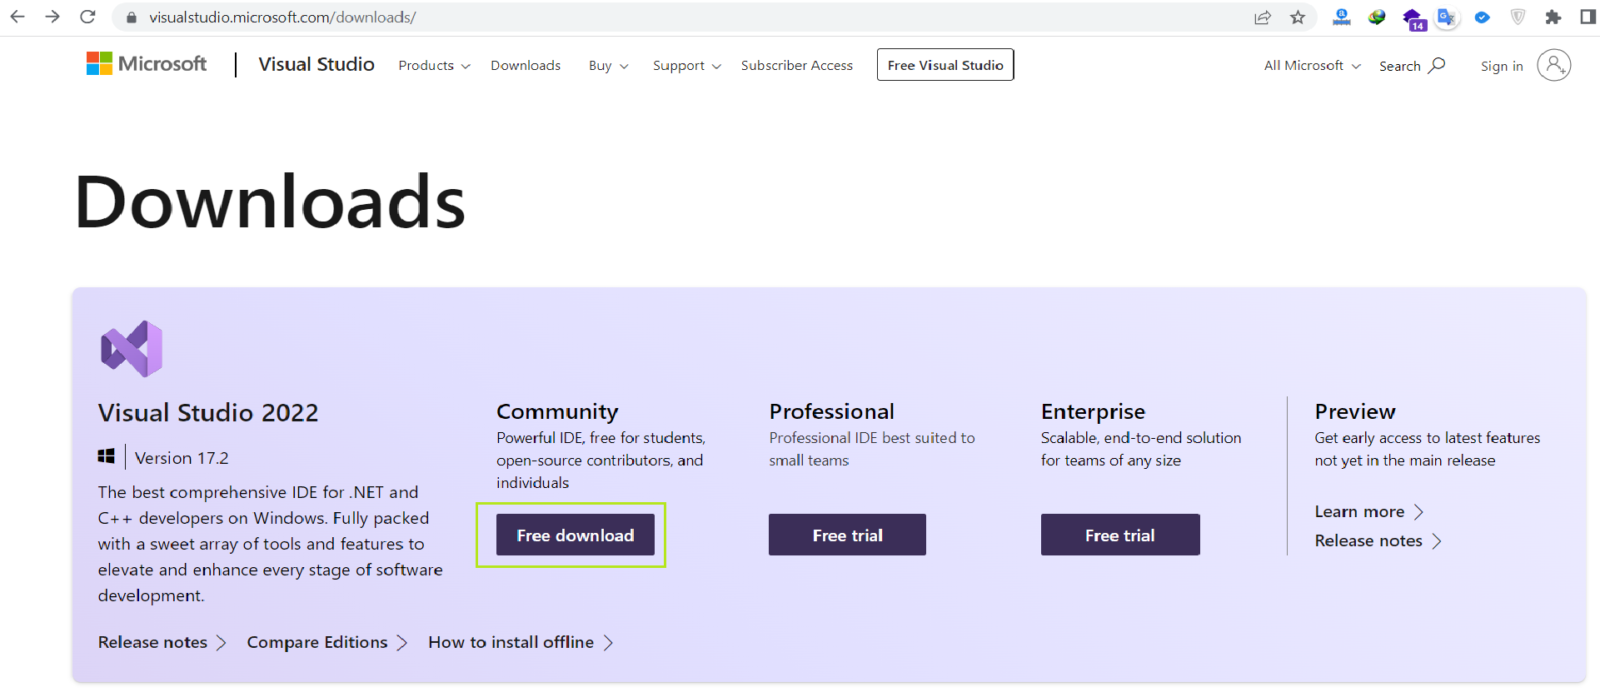 (صفحه اصلی سایت مایکروسافت برای دانلود ویژوال استودیو)Microsoft Home Page to Download Visual Studio